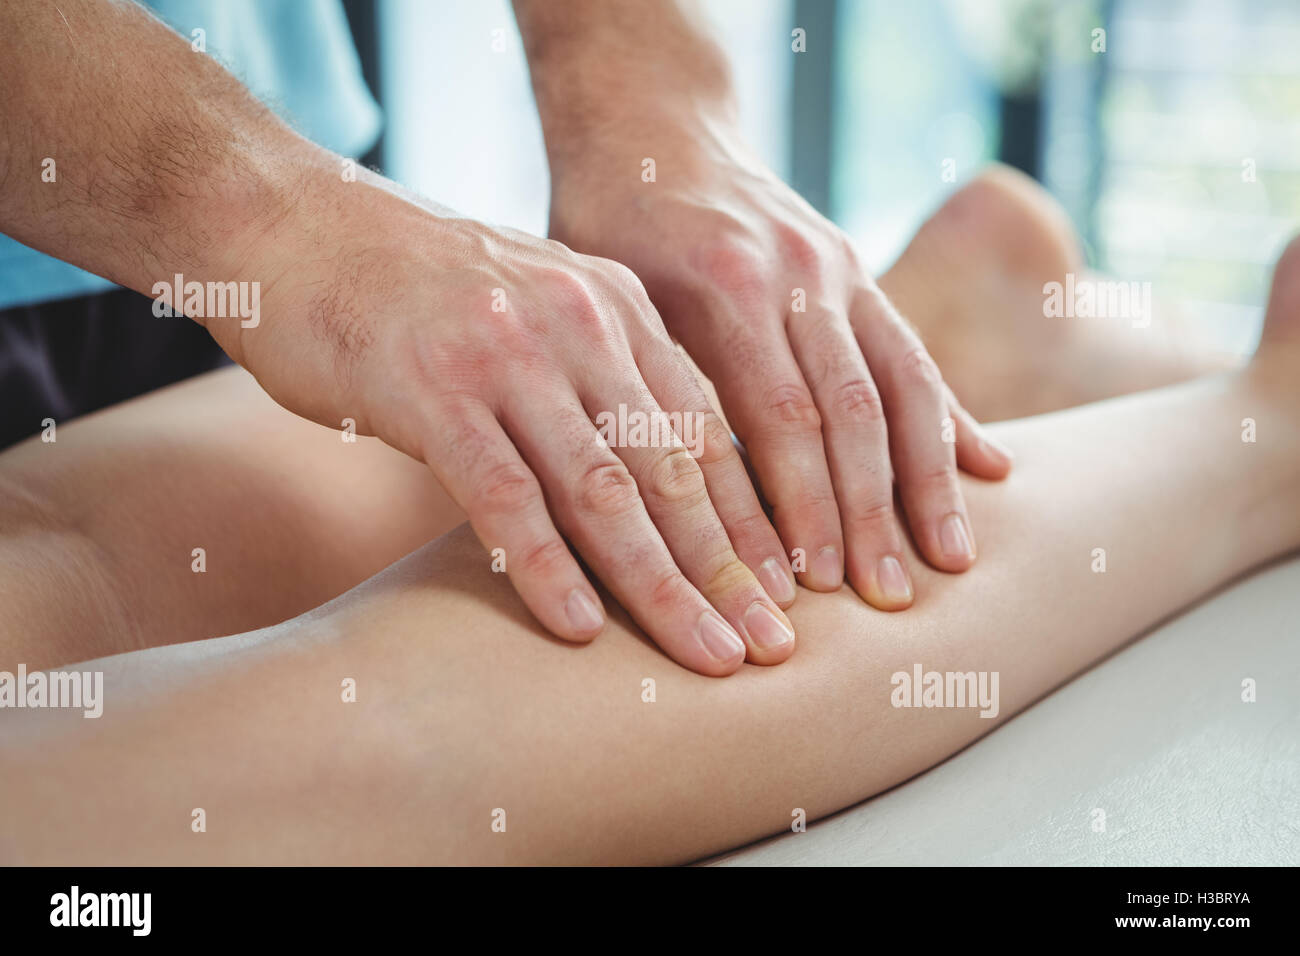 Physiothérapeute thérapie physique donnant à la jambe d'une femme Banque D'Images